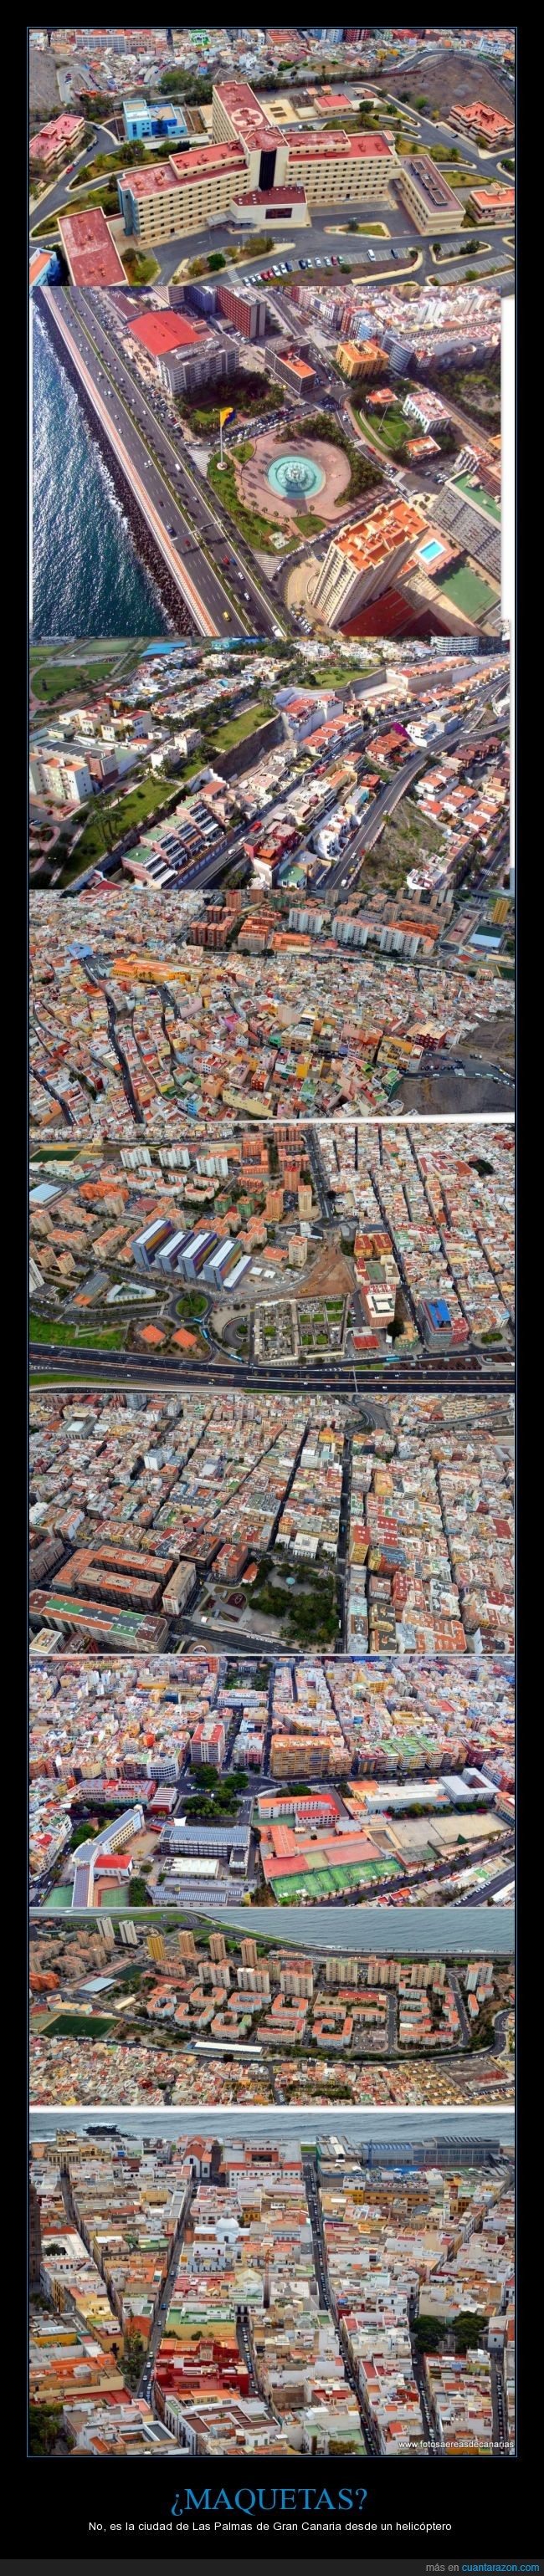 maqueta,ciudad,foto aérea,Las Palmas,Gran Canaria,juguetes,colorido